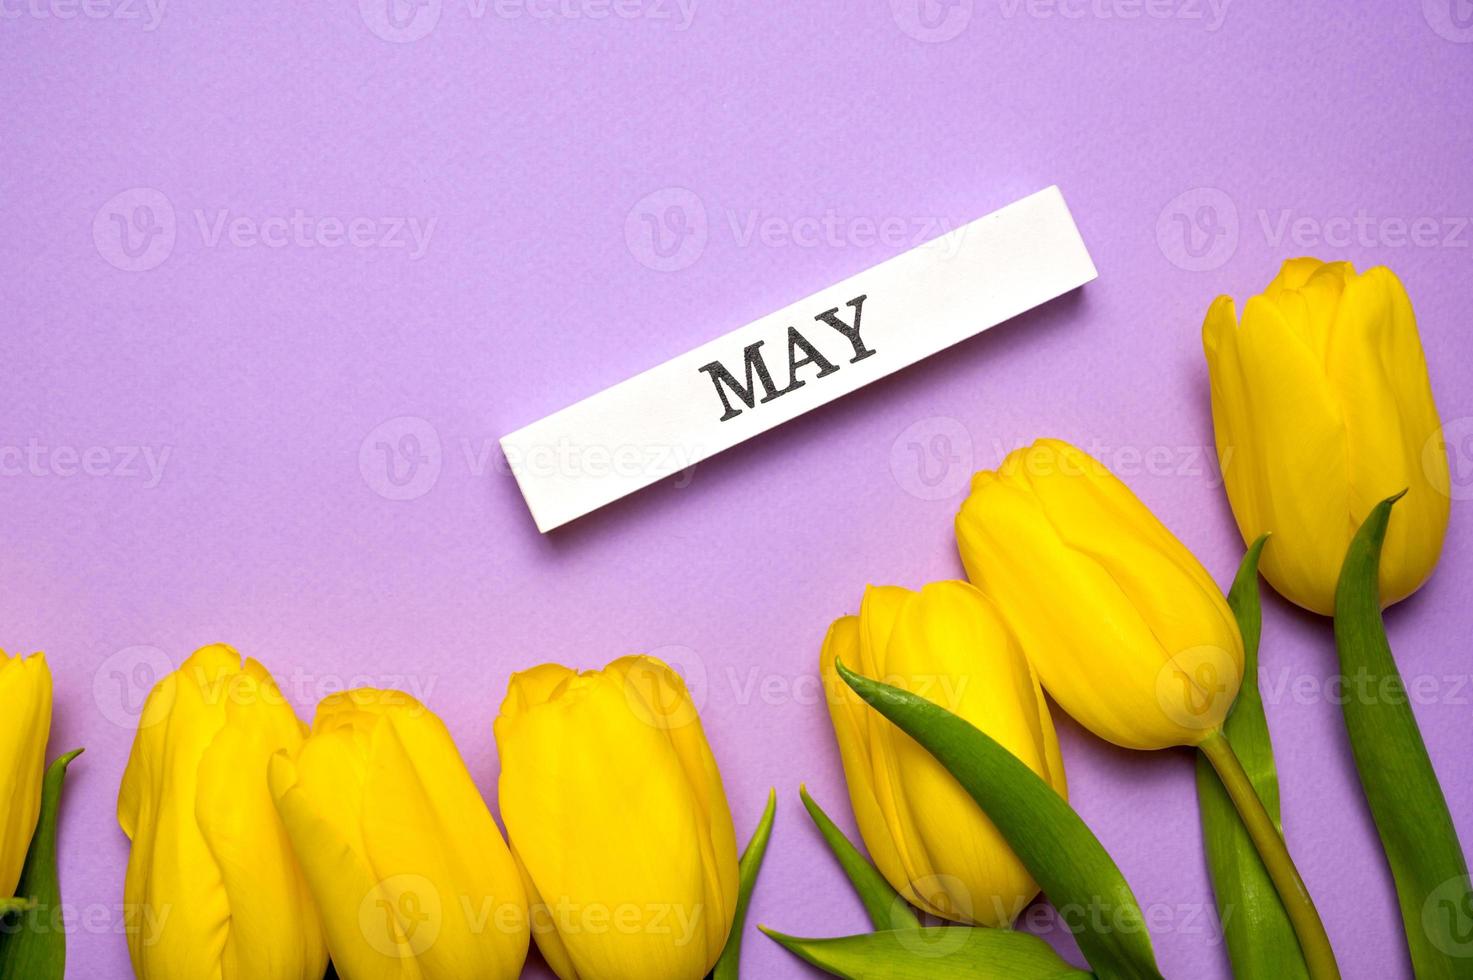 bannière de printemps avec des tulipes jaunes sur fond violet paset avec mai écrit sur une cale en bois photo